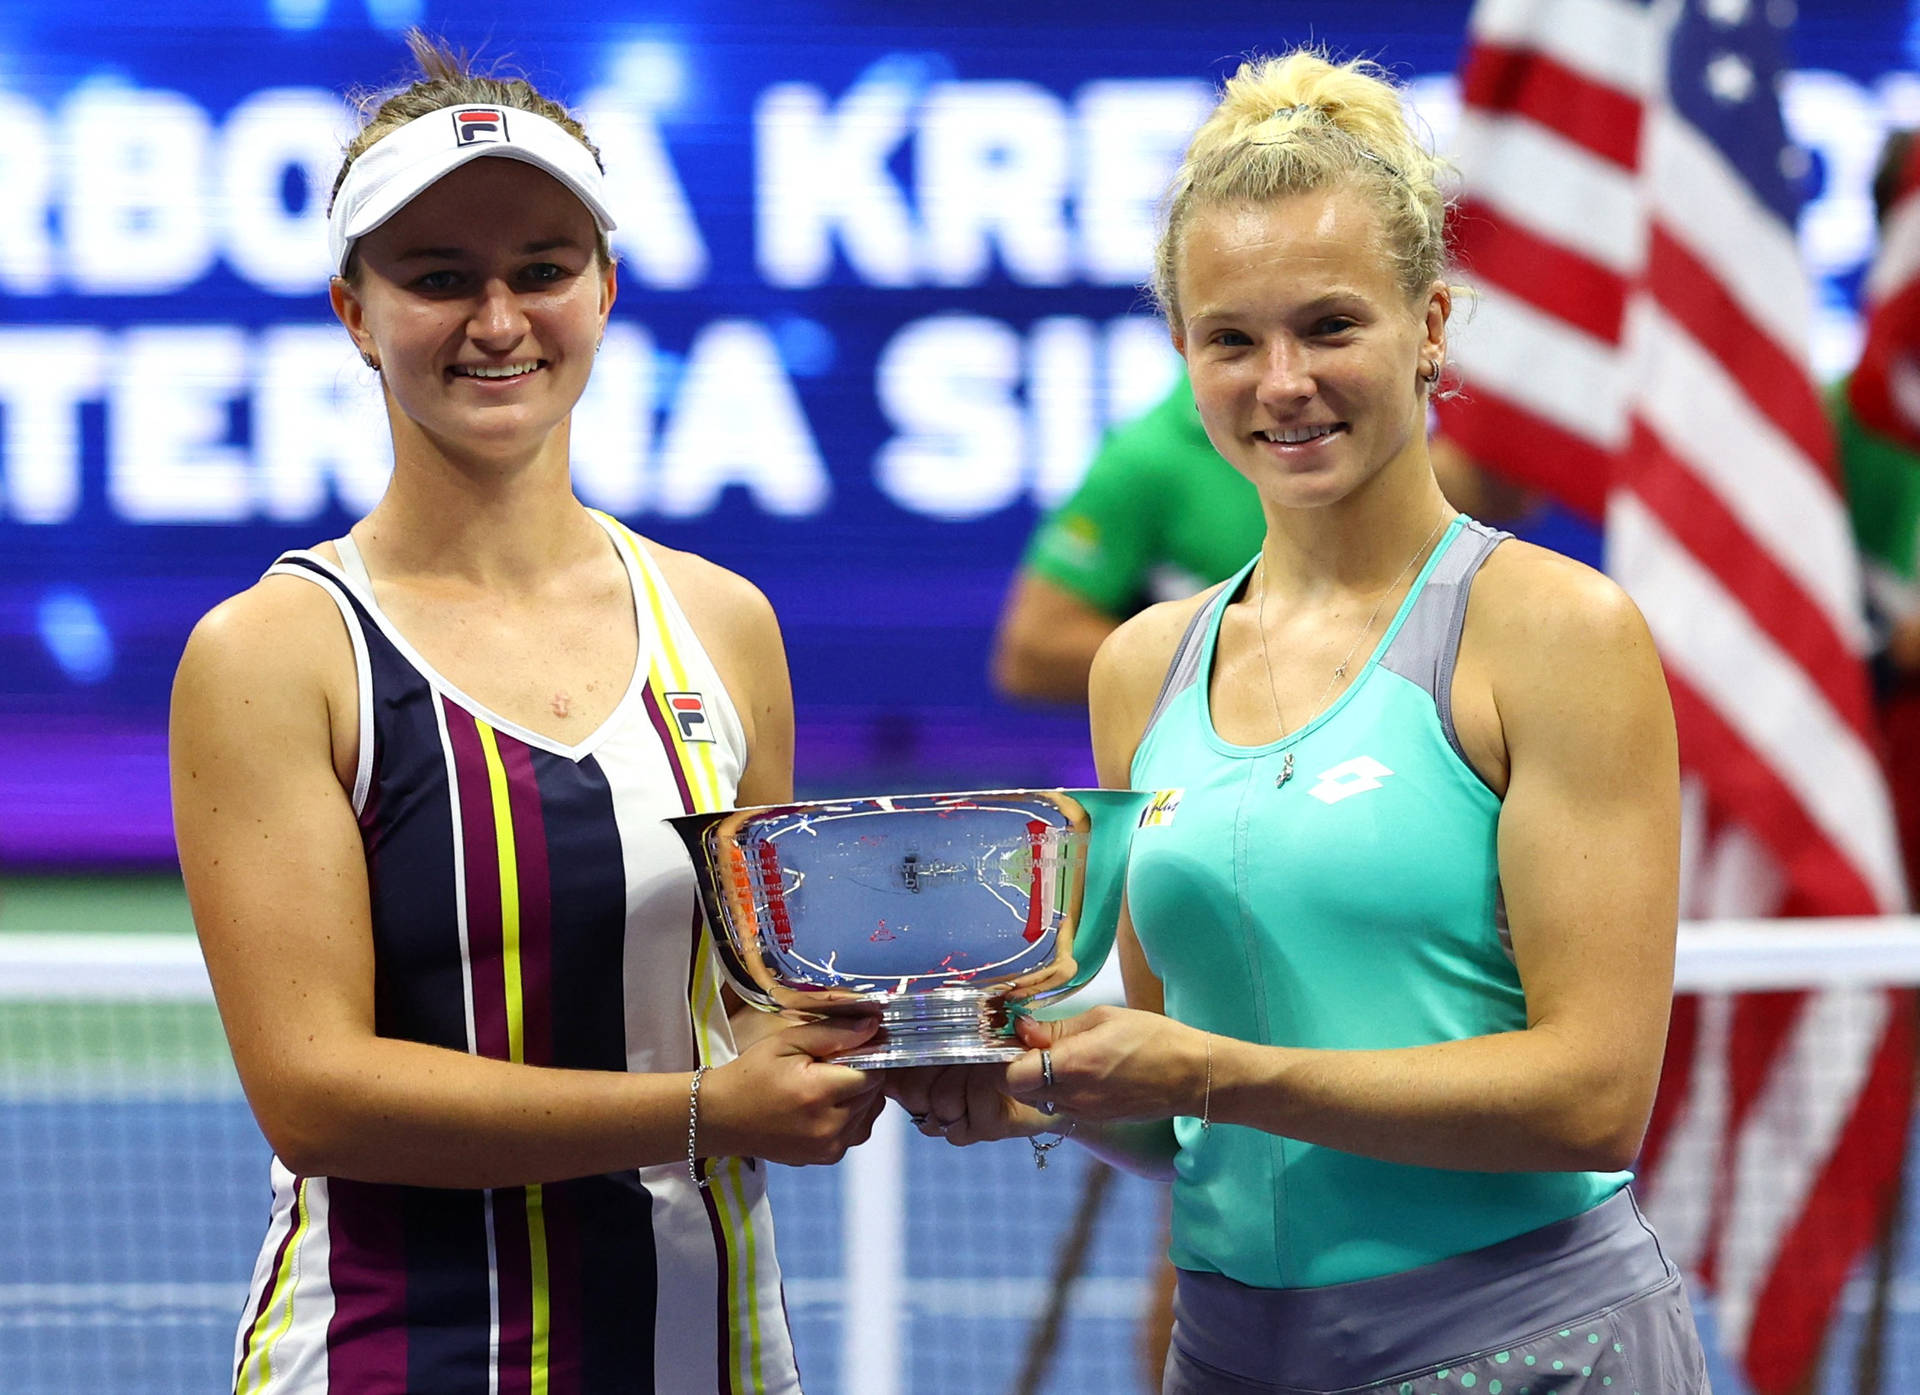 Barborakrejcikova Con Siniakova Jugadora De Tenis Fondo de pantalla